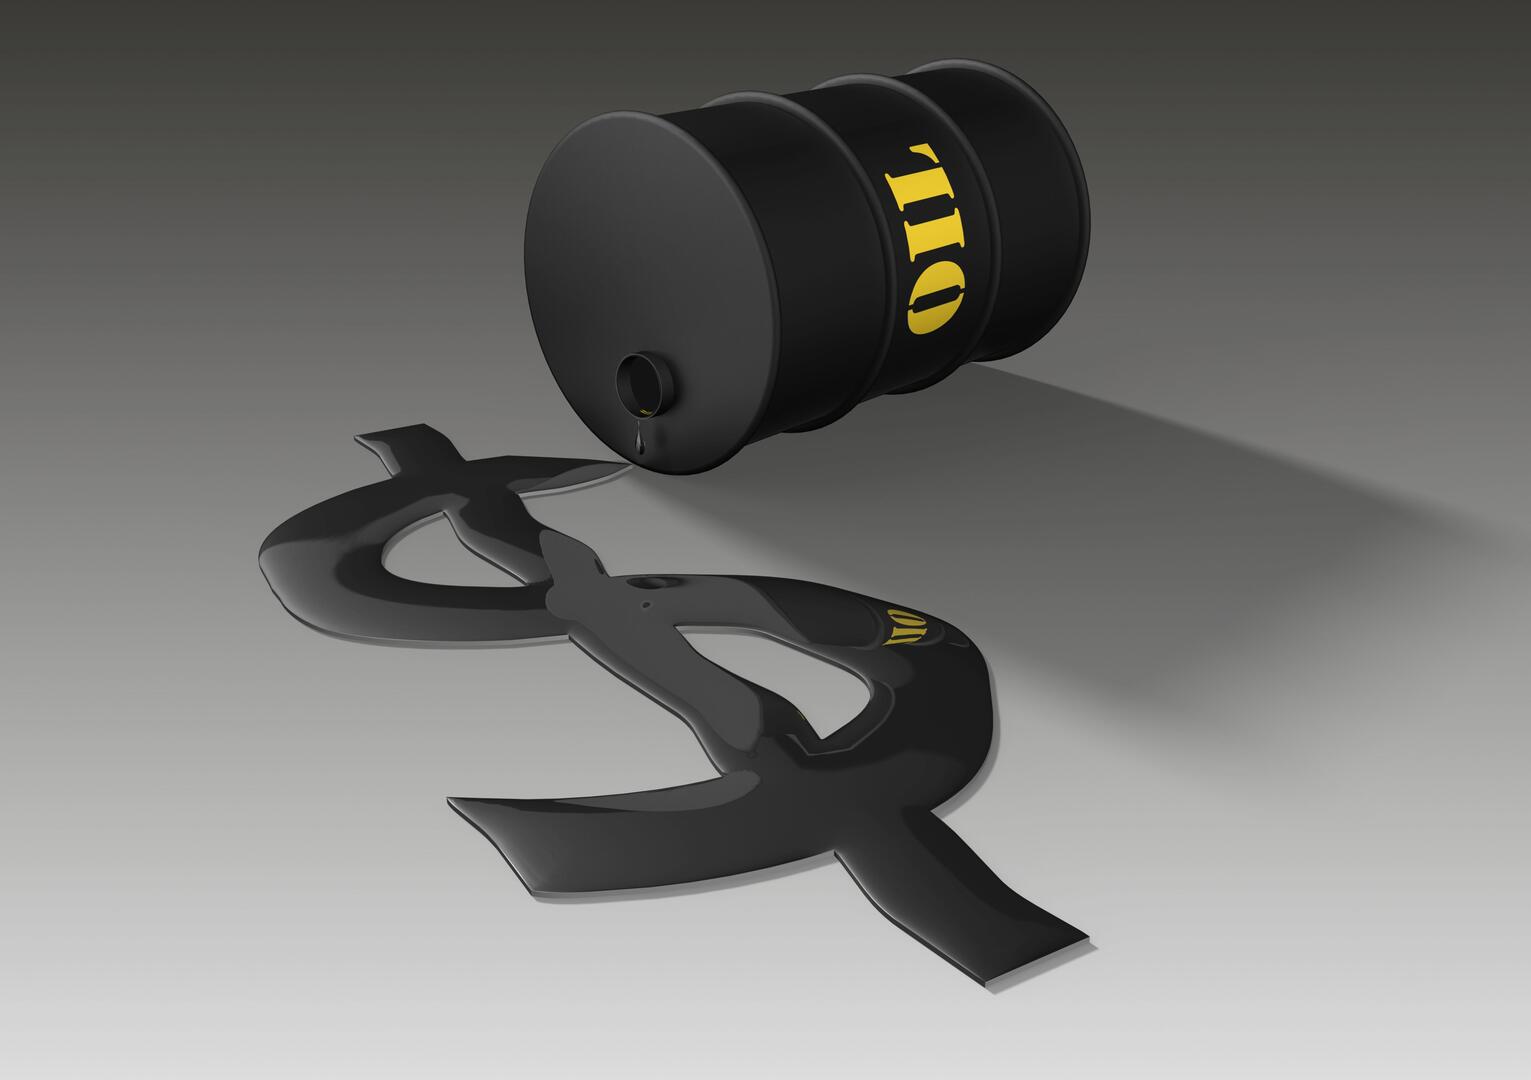 ارتفاع أسعار النفط وسط مخاوف حول الإمدادات